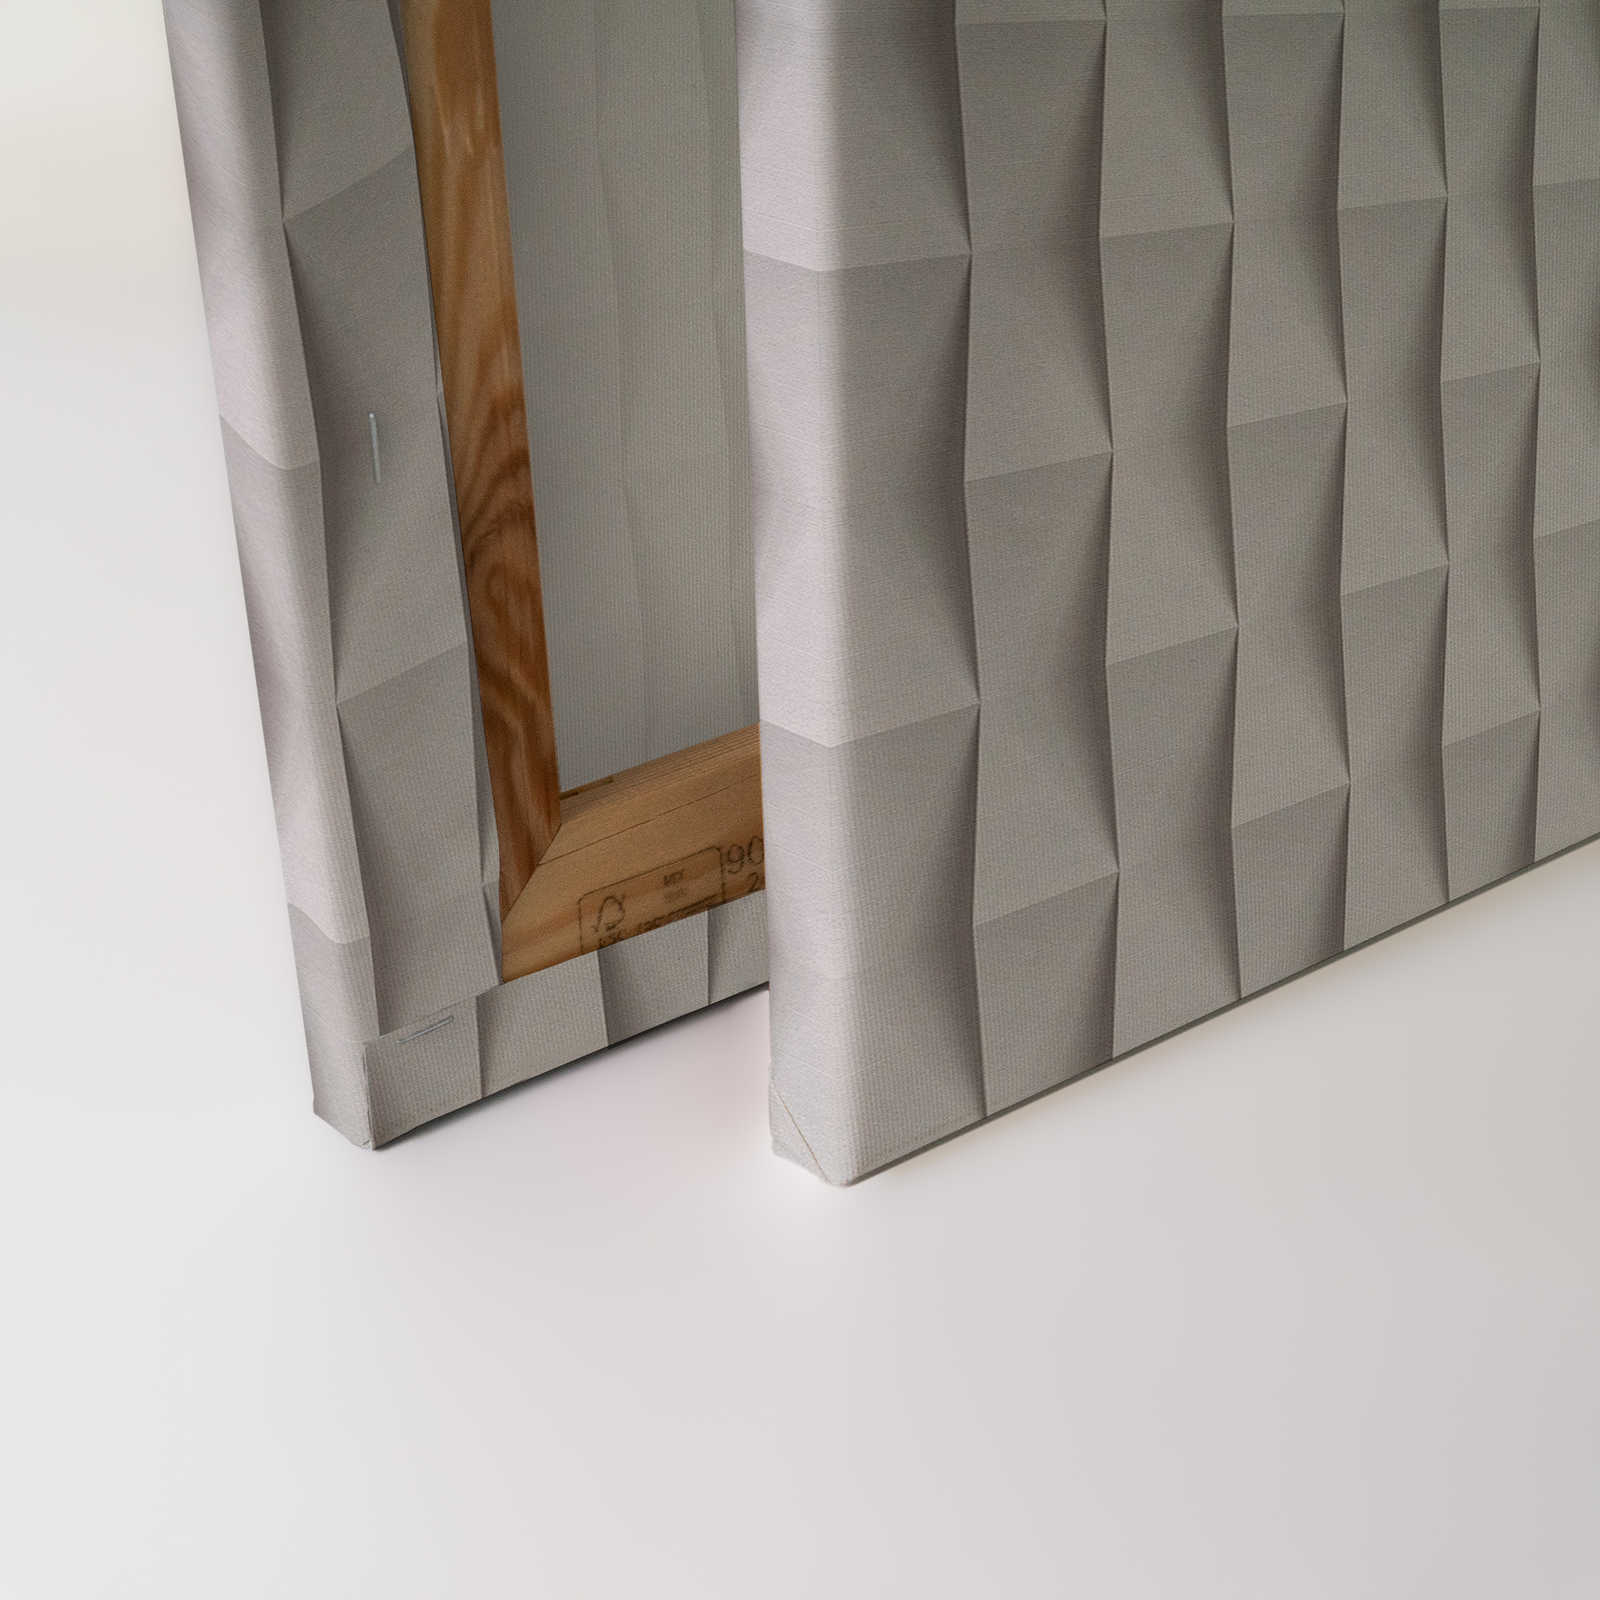             Casa di carta 2 - Pittura su tela 3D Design pieghevole su carta con ombre - 1,20 m x 0,80 m
        